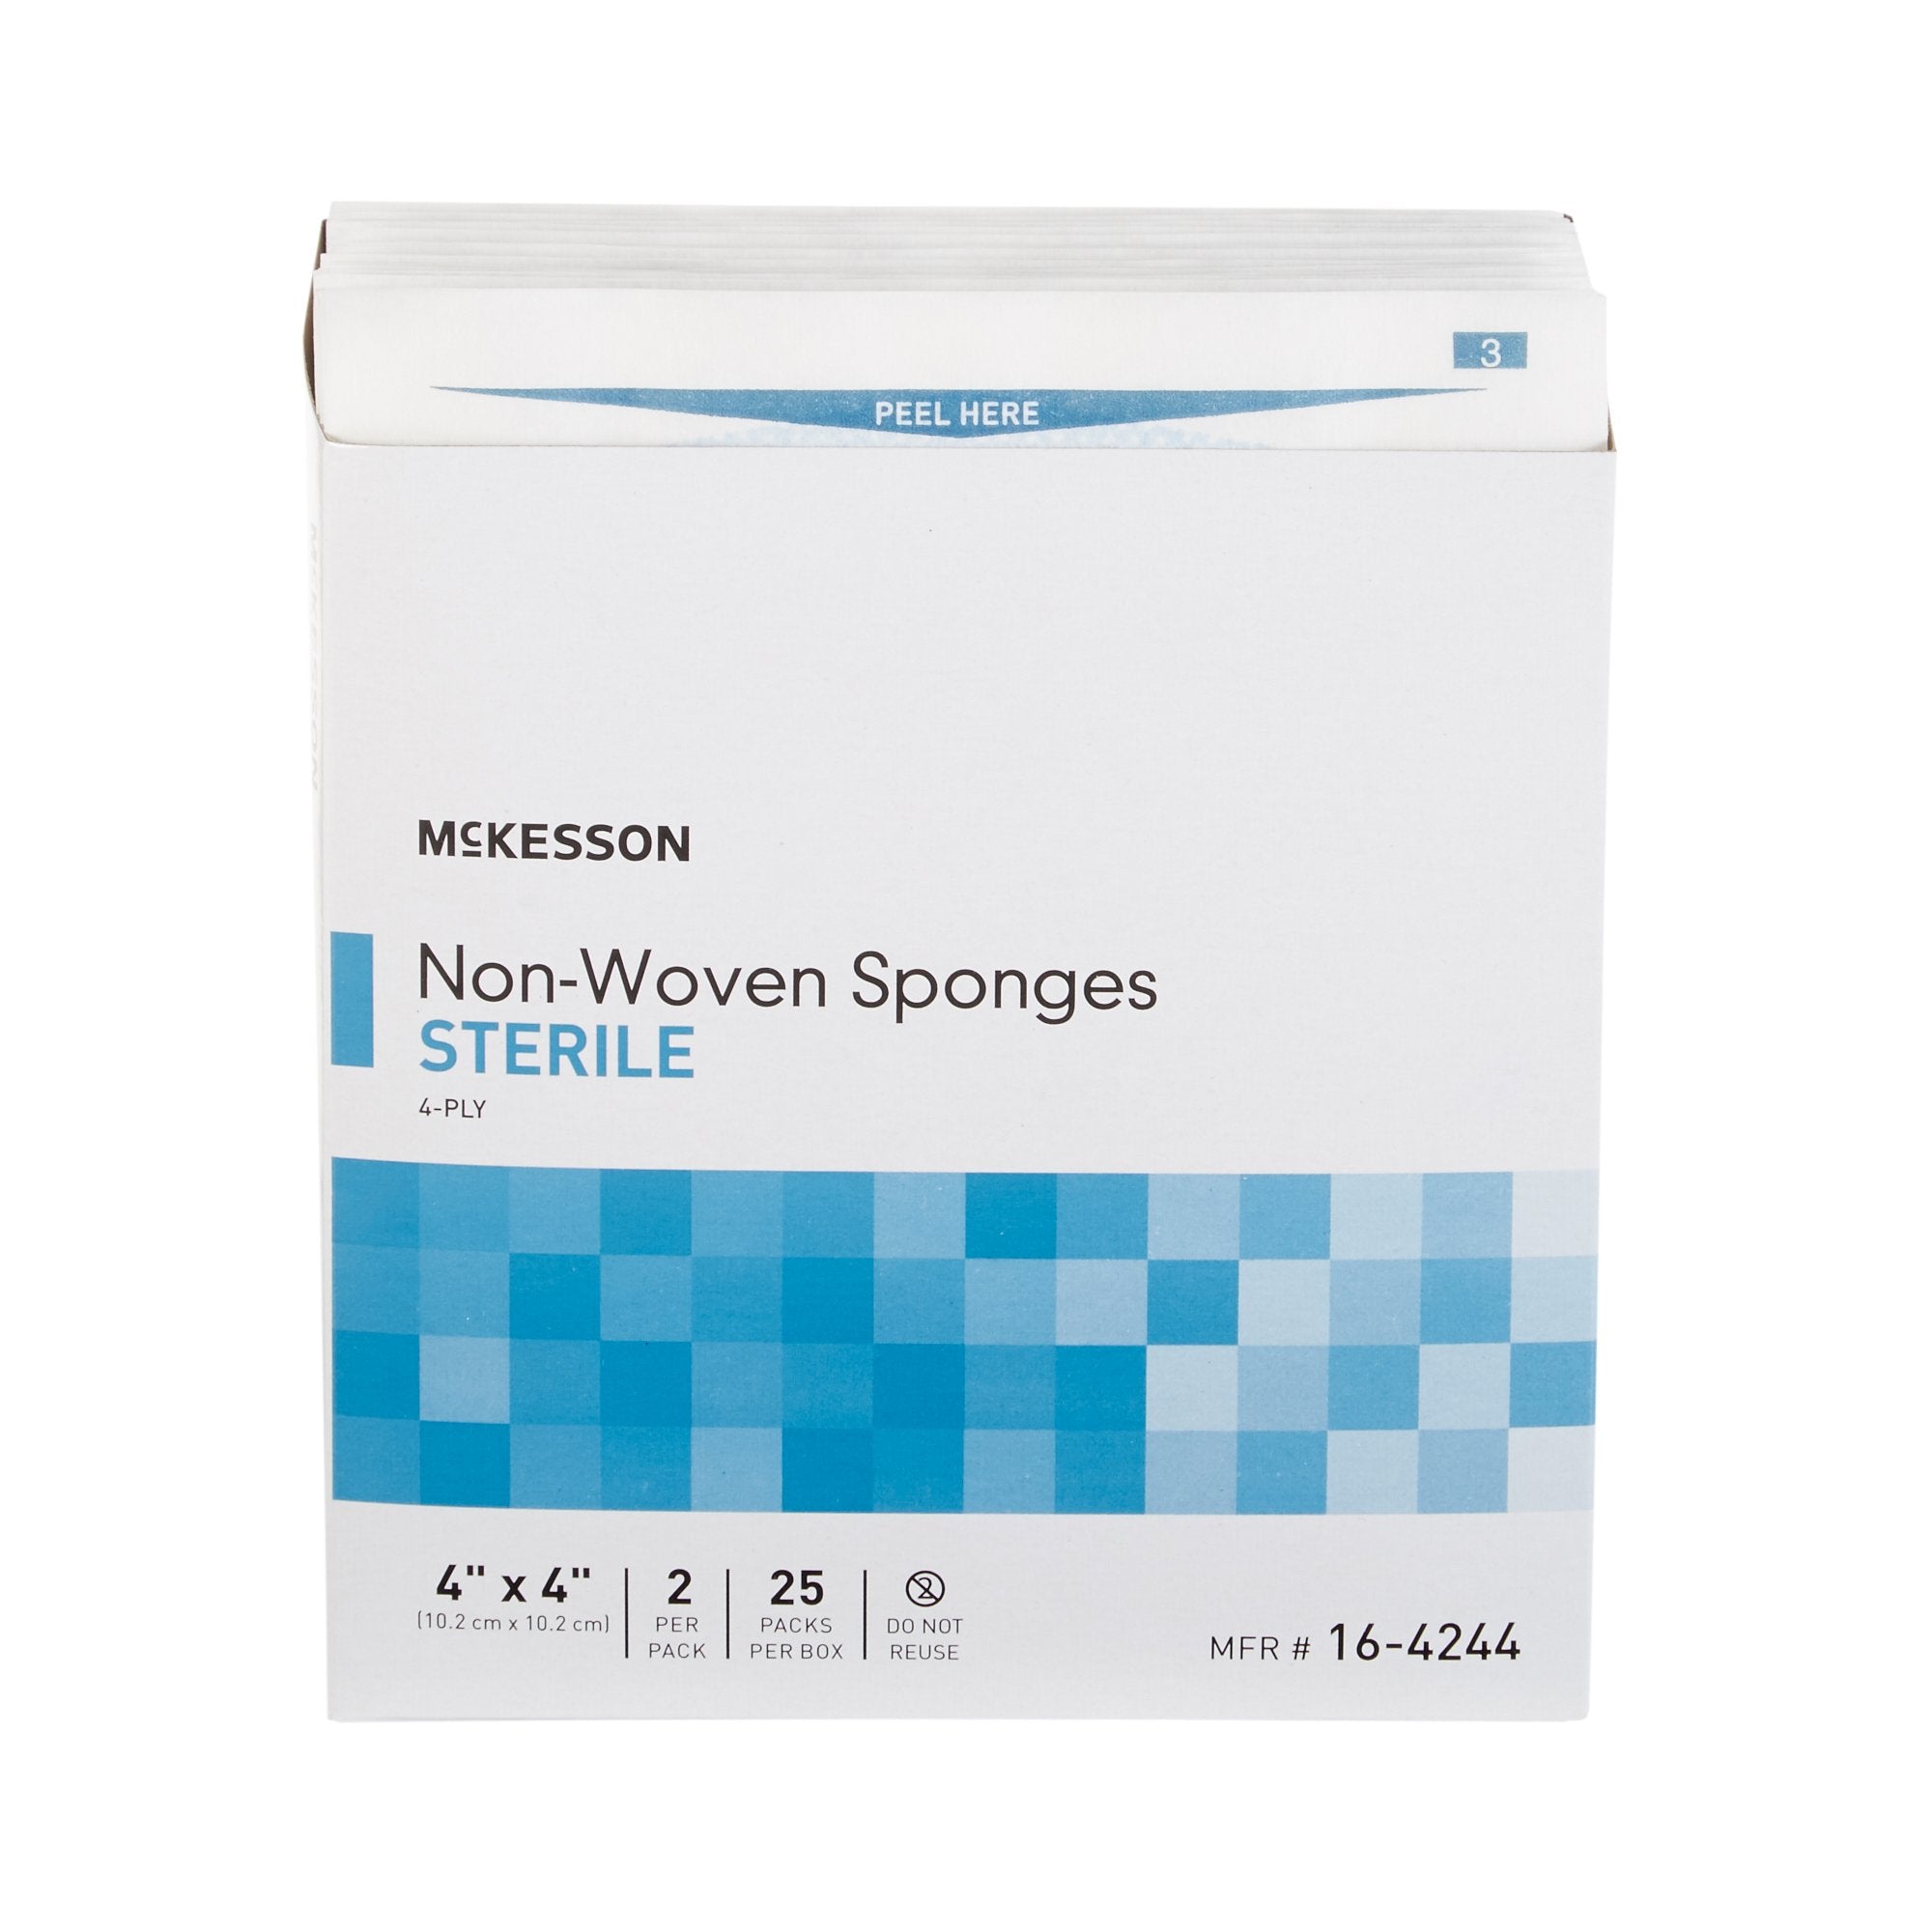 Nonwoven Sponge McKesson Polyester / Rayon 4-Ply 4 X 4 Inch Square Sterile